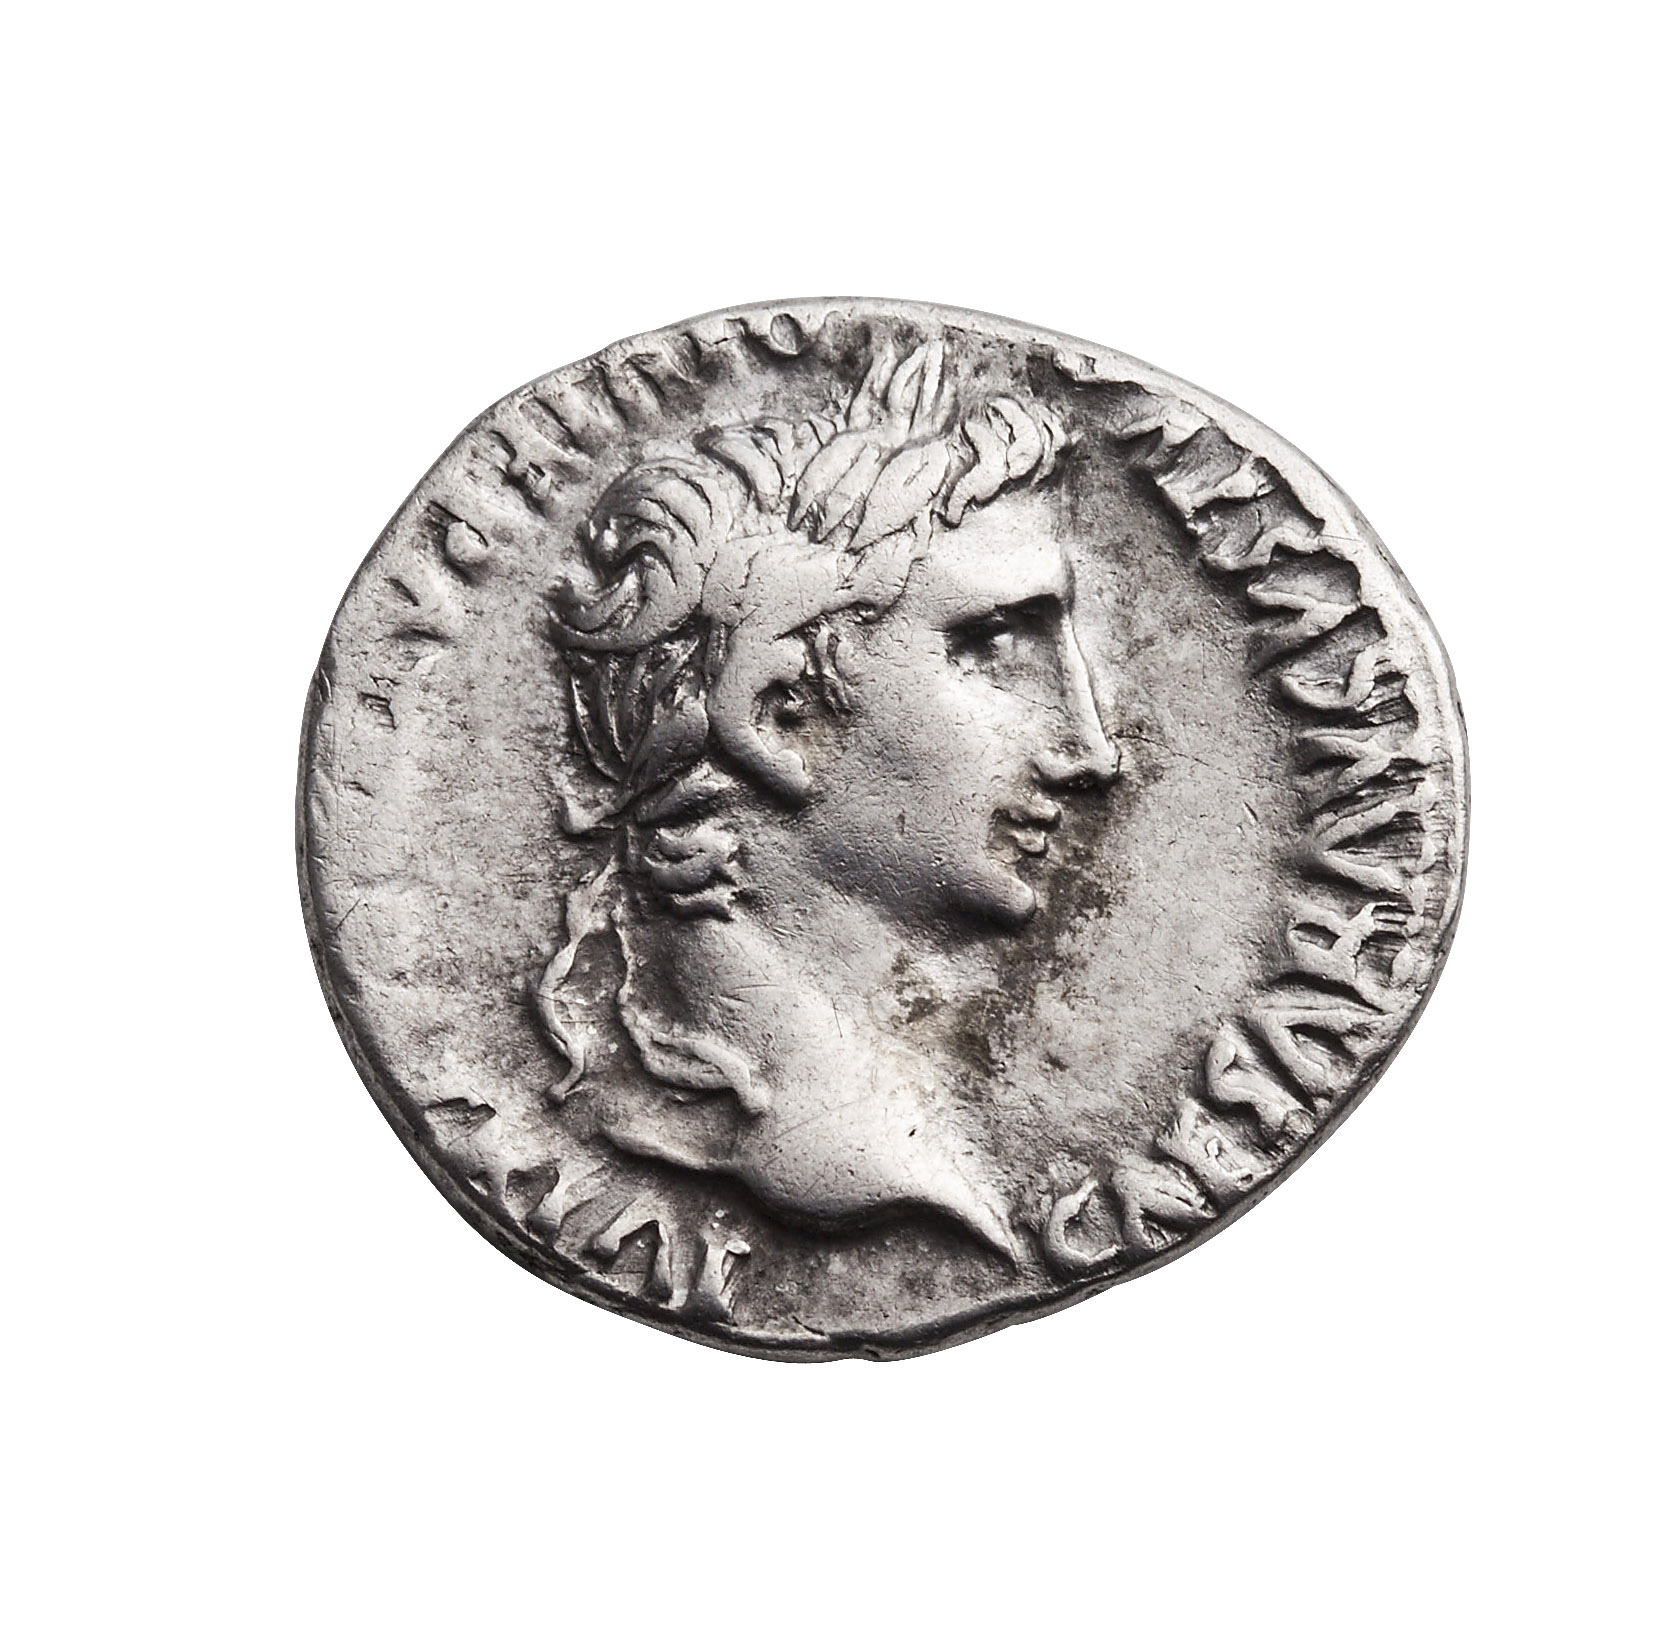 Augustus denarius i sølv. Augustus likte å framstå som ung på romerske mynter, statuer og portretter, og på dette bildet ser han ut som om han er 40 år yngre enn han egentlig er.